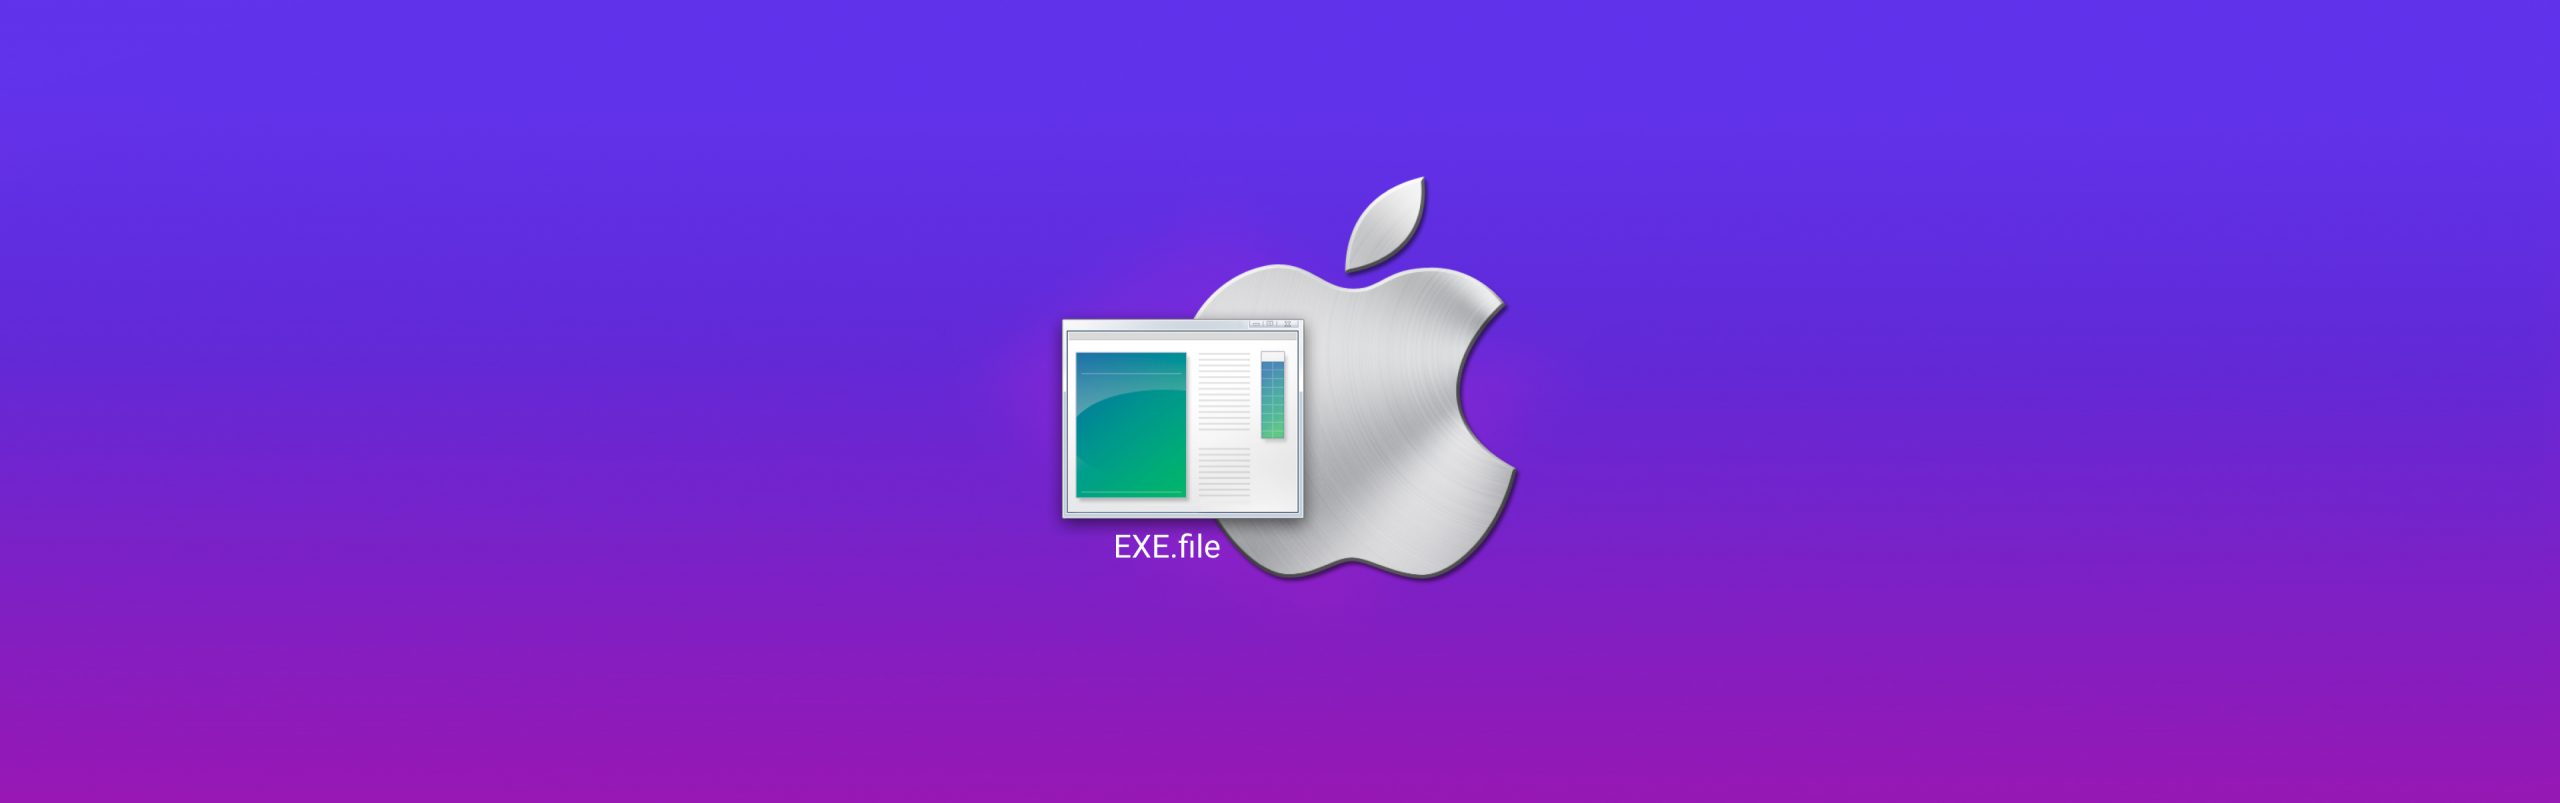 exe emulator mac